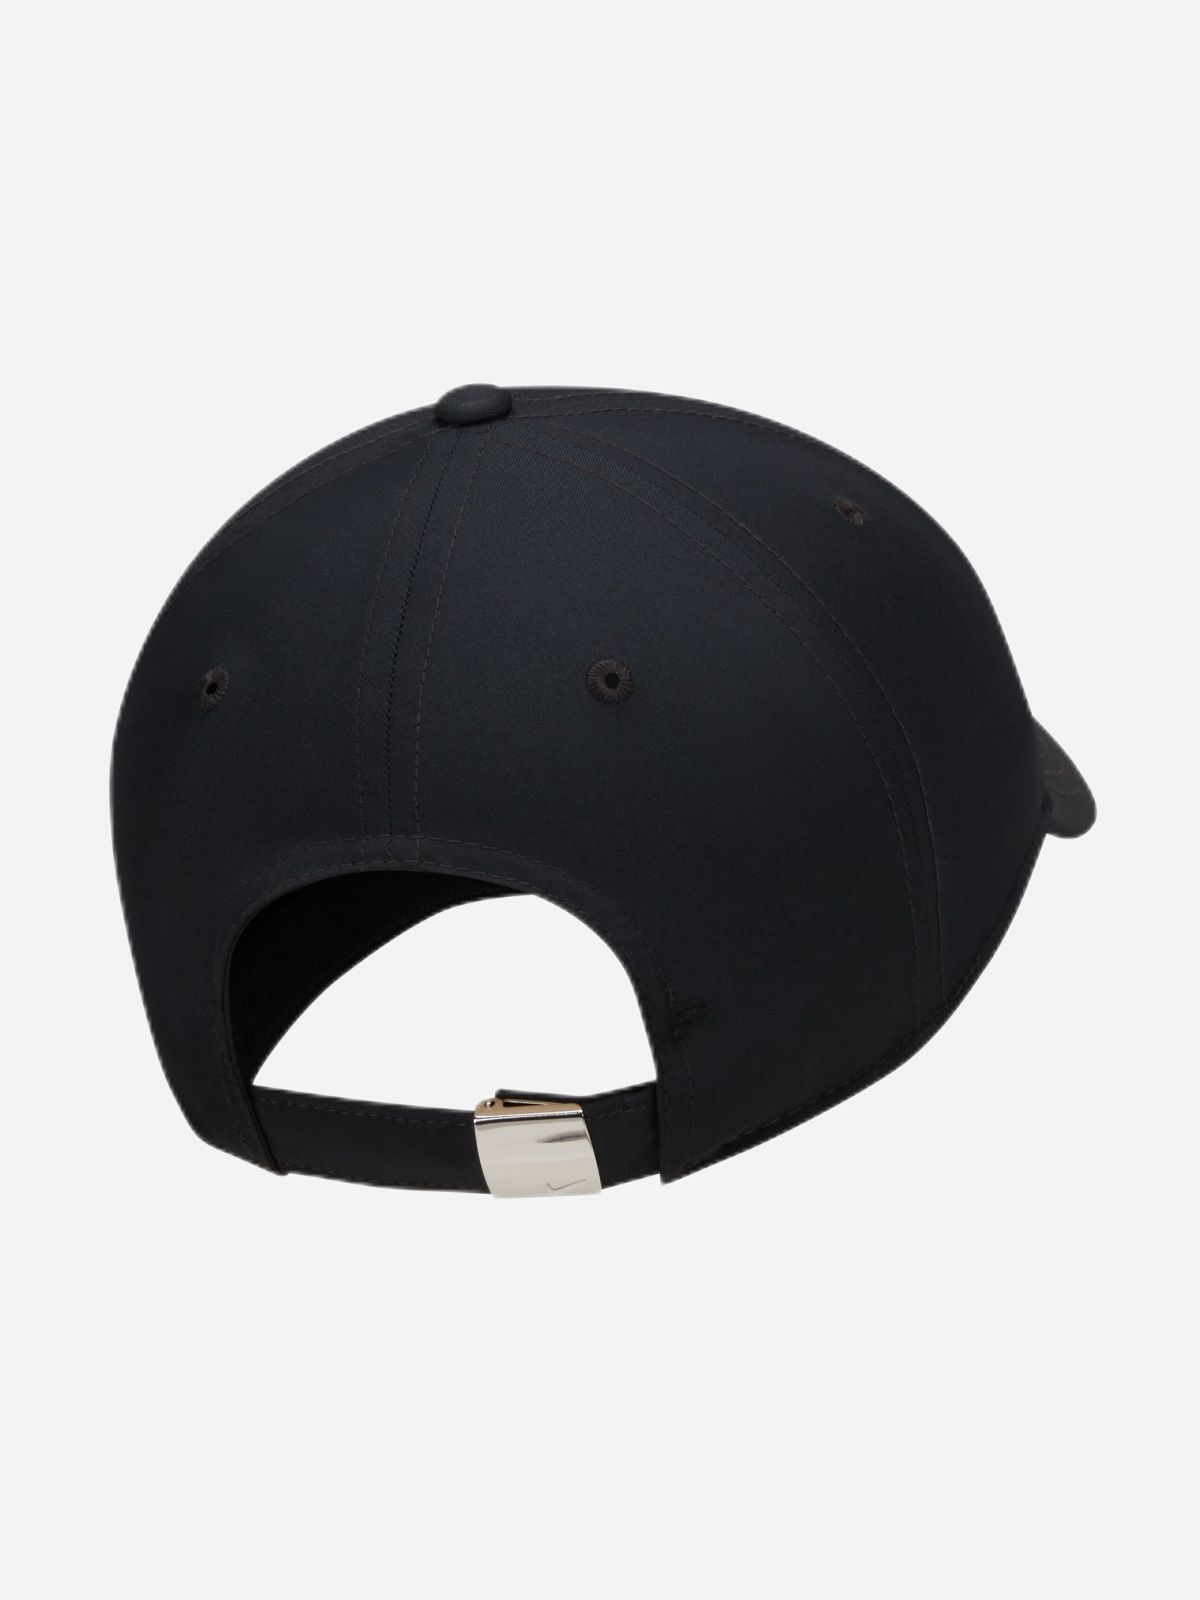  כובע מצחייה עם לוגו / גברים של NIKE